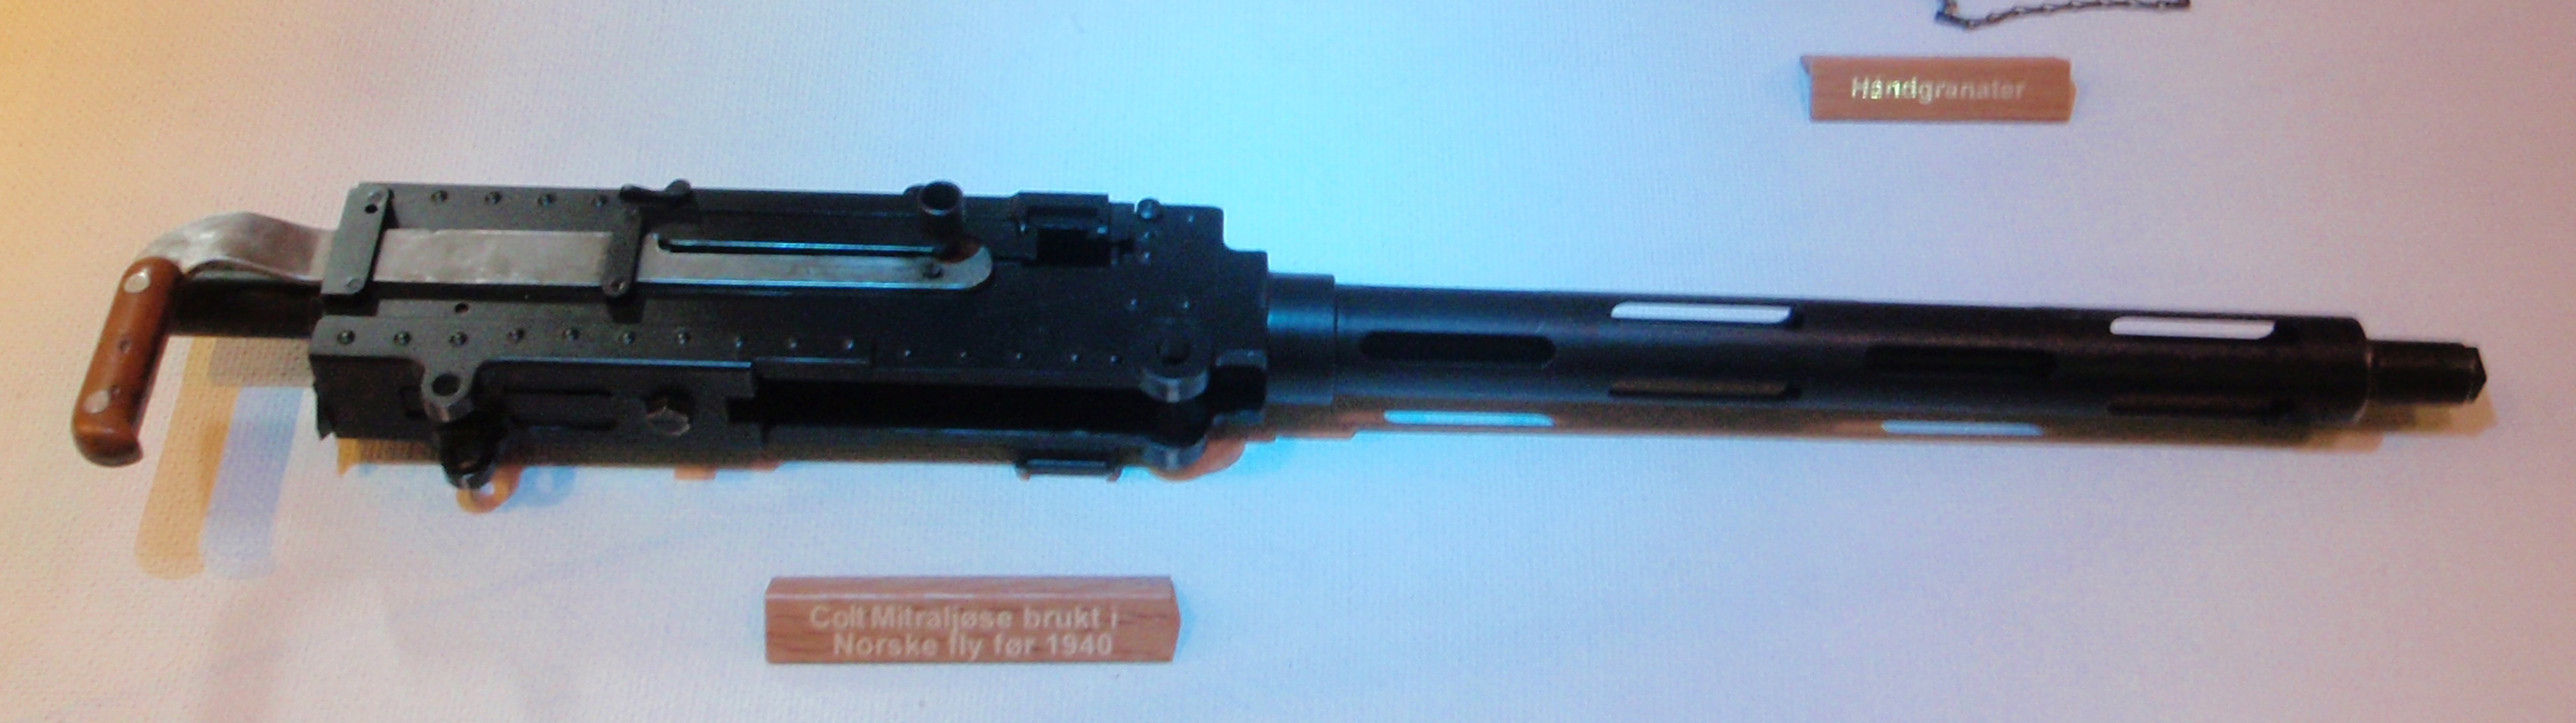 ./guns/mg/bilder/MG-Kongsberg-M29-Forermitraljose-1.jpg